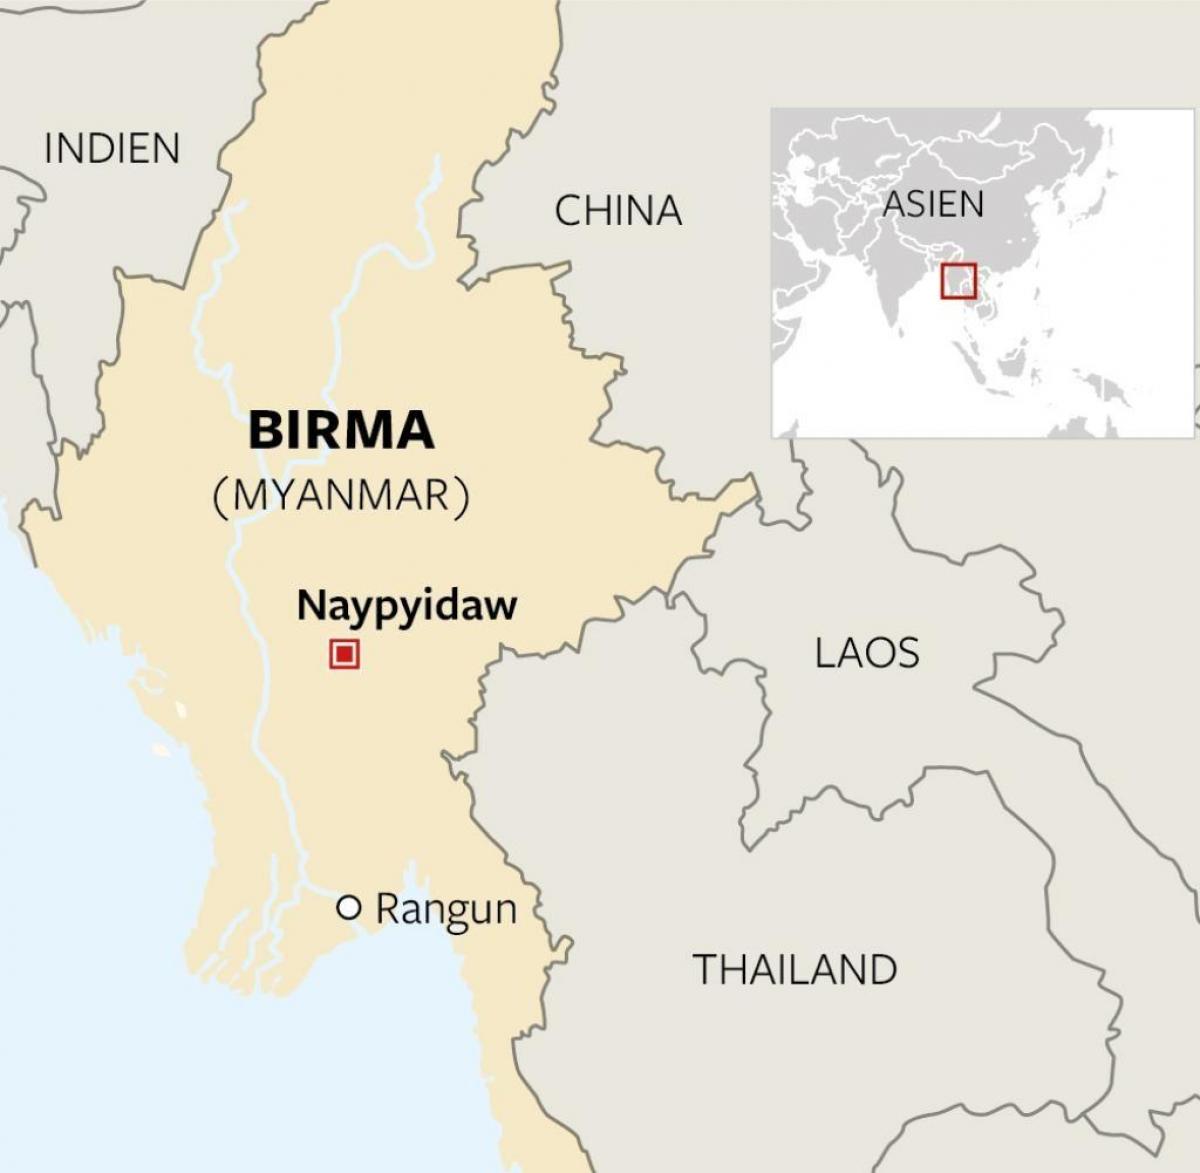 localizar Birmania no mapa do mundo